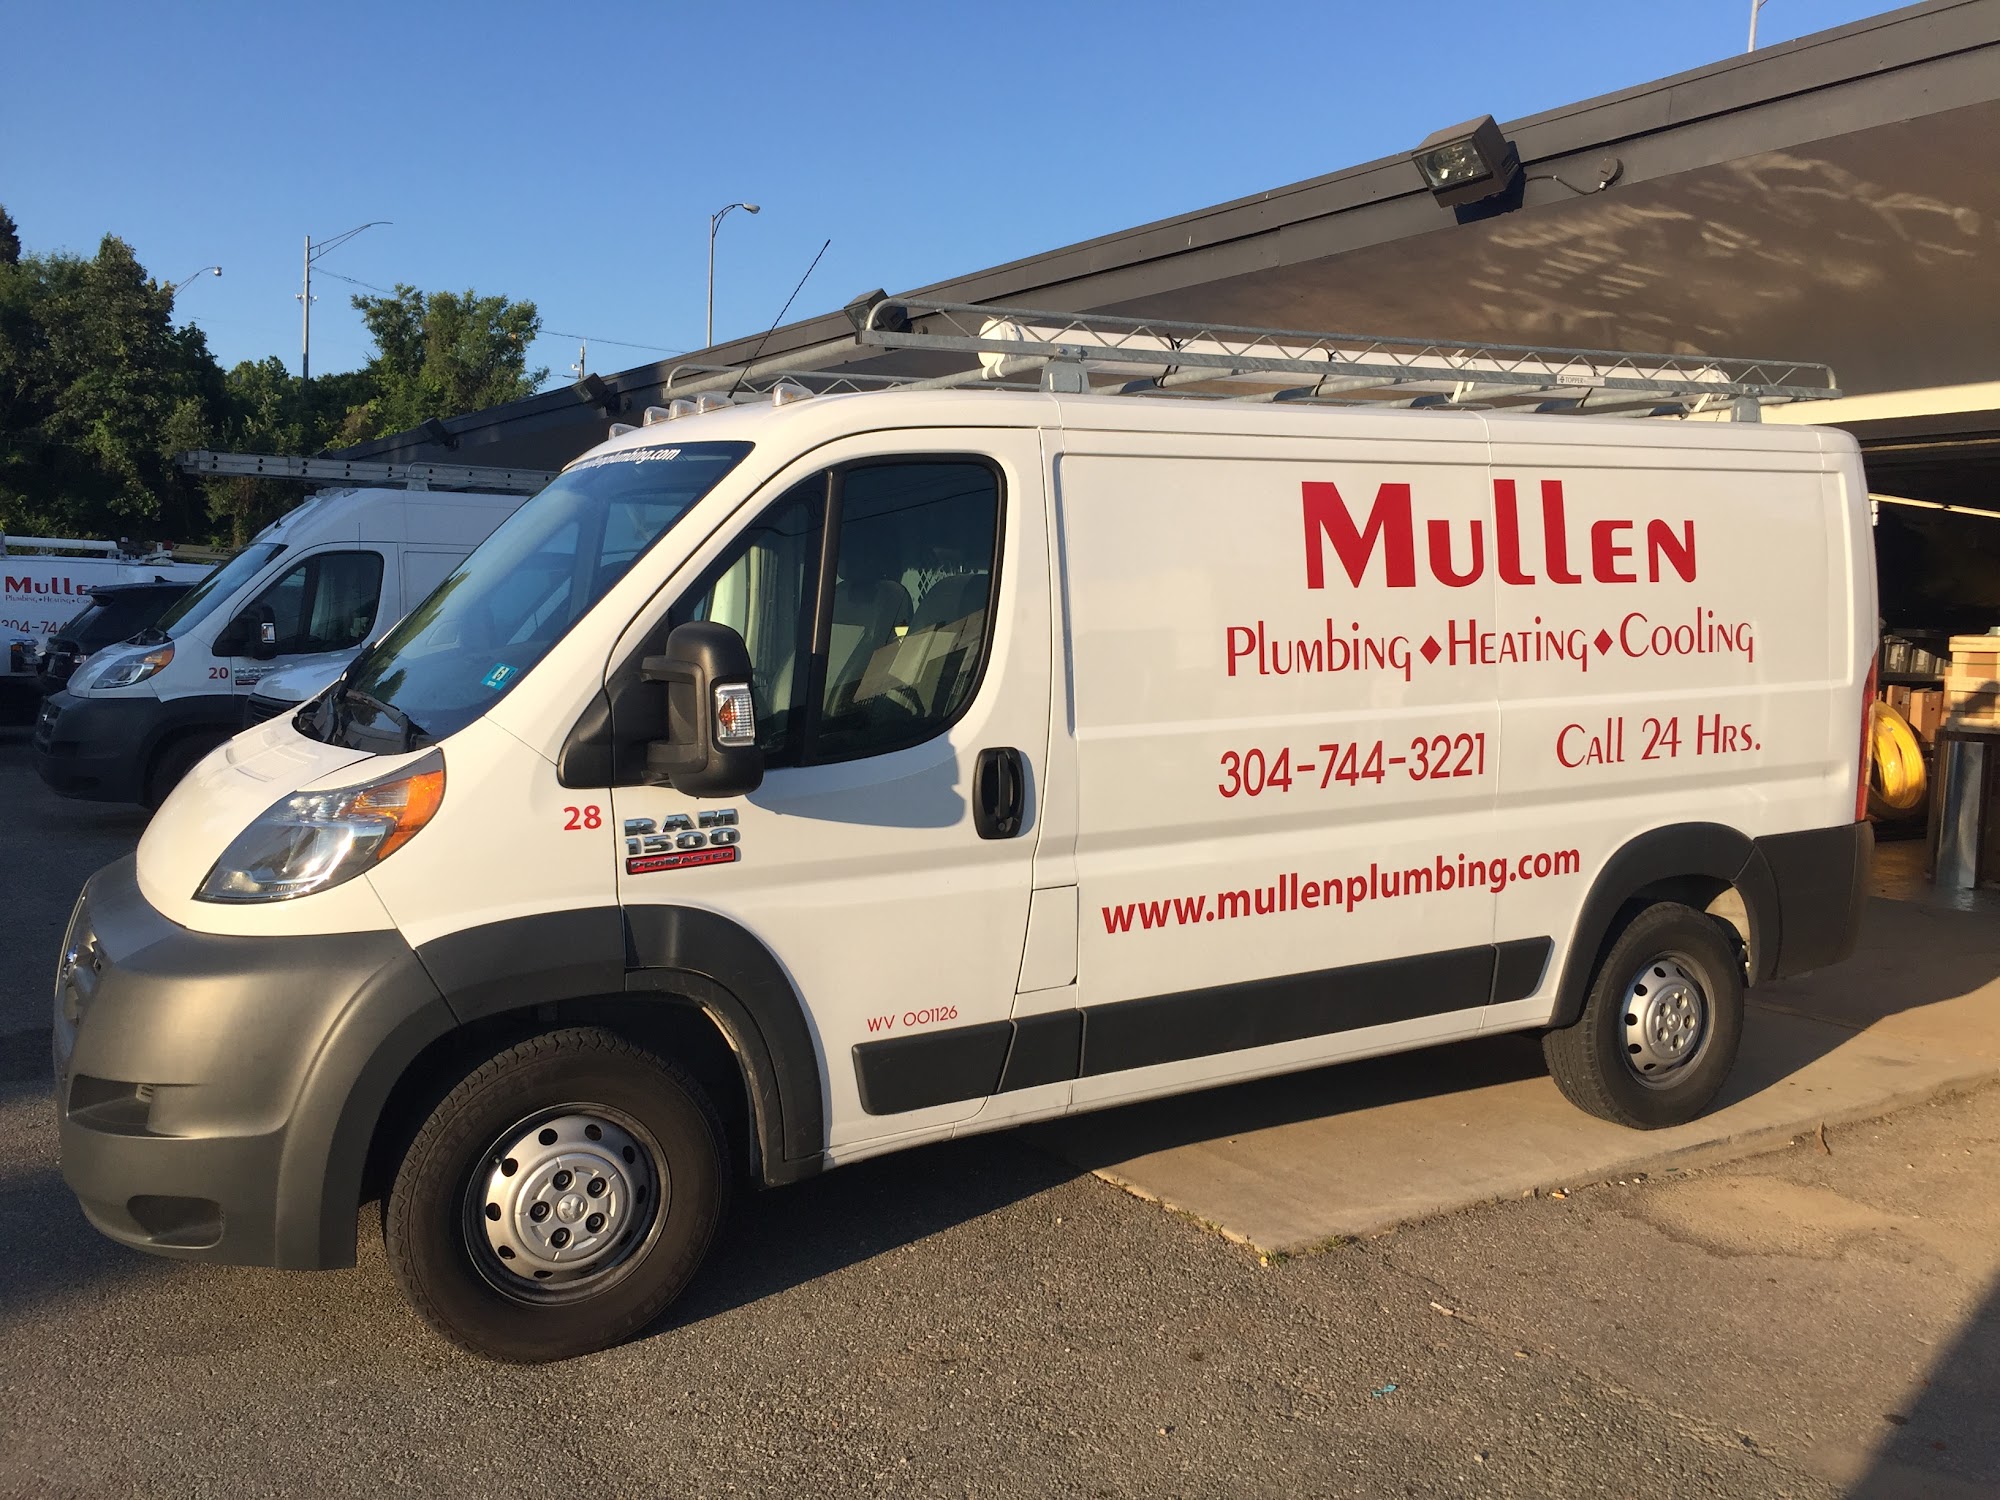 Mullen Plumbing, Heating & Cooling